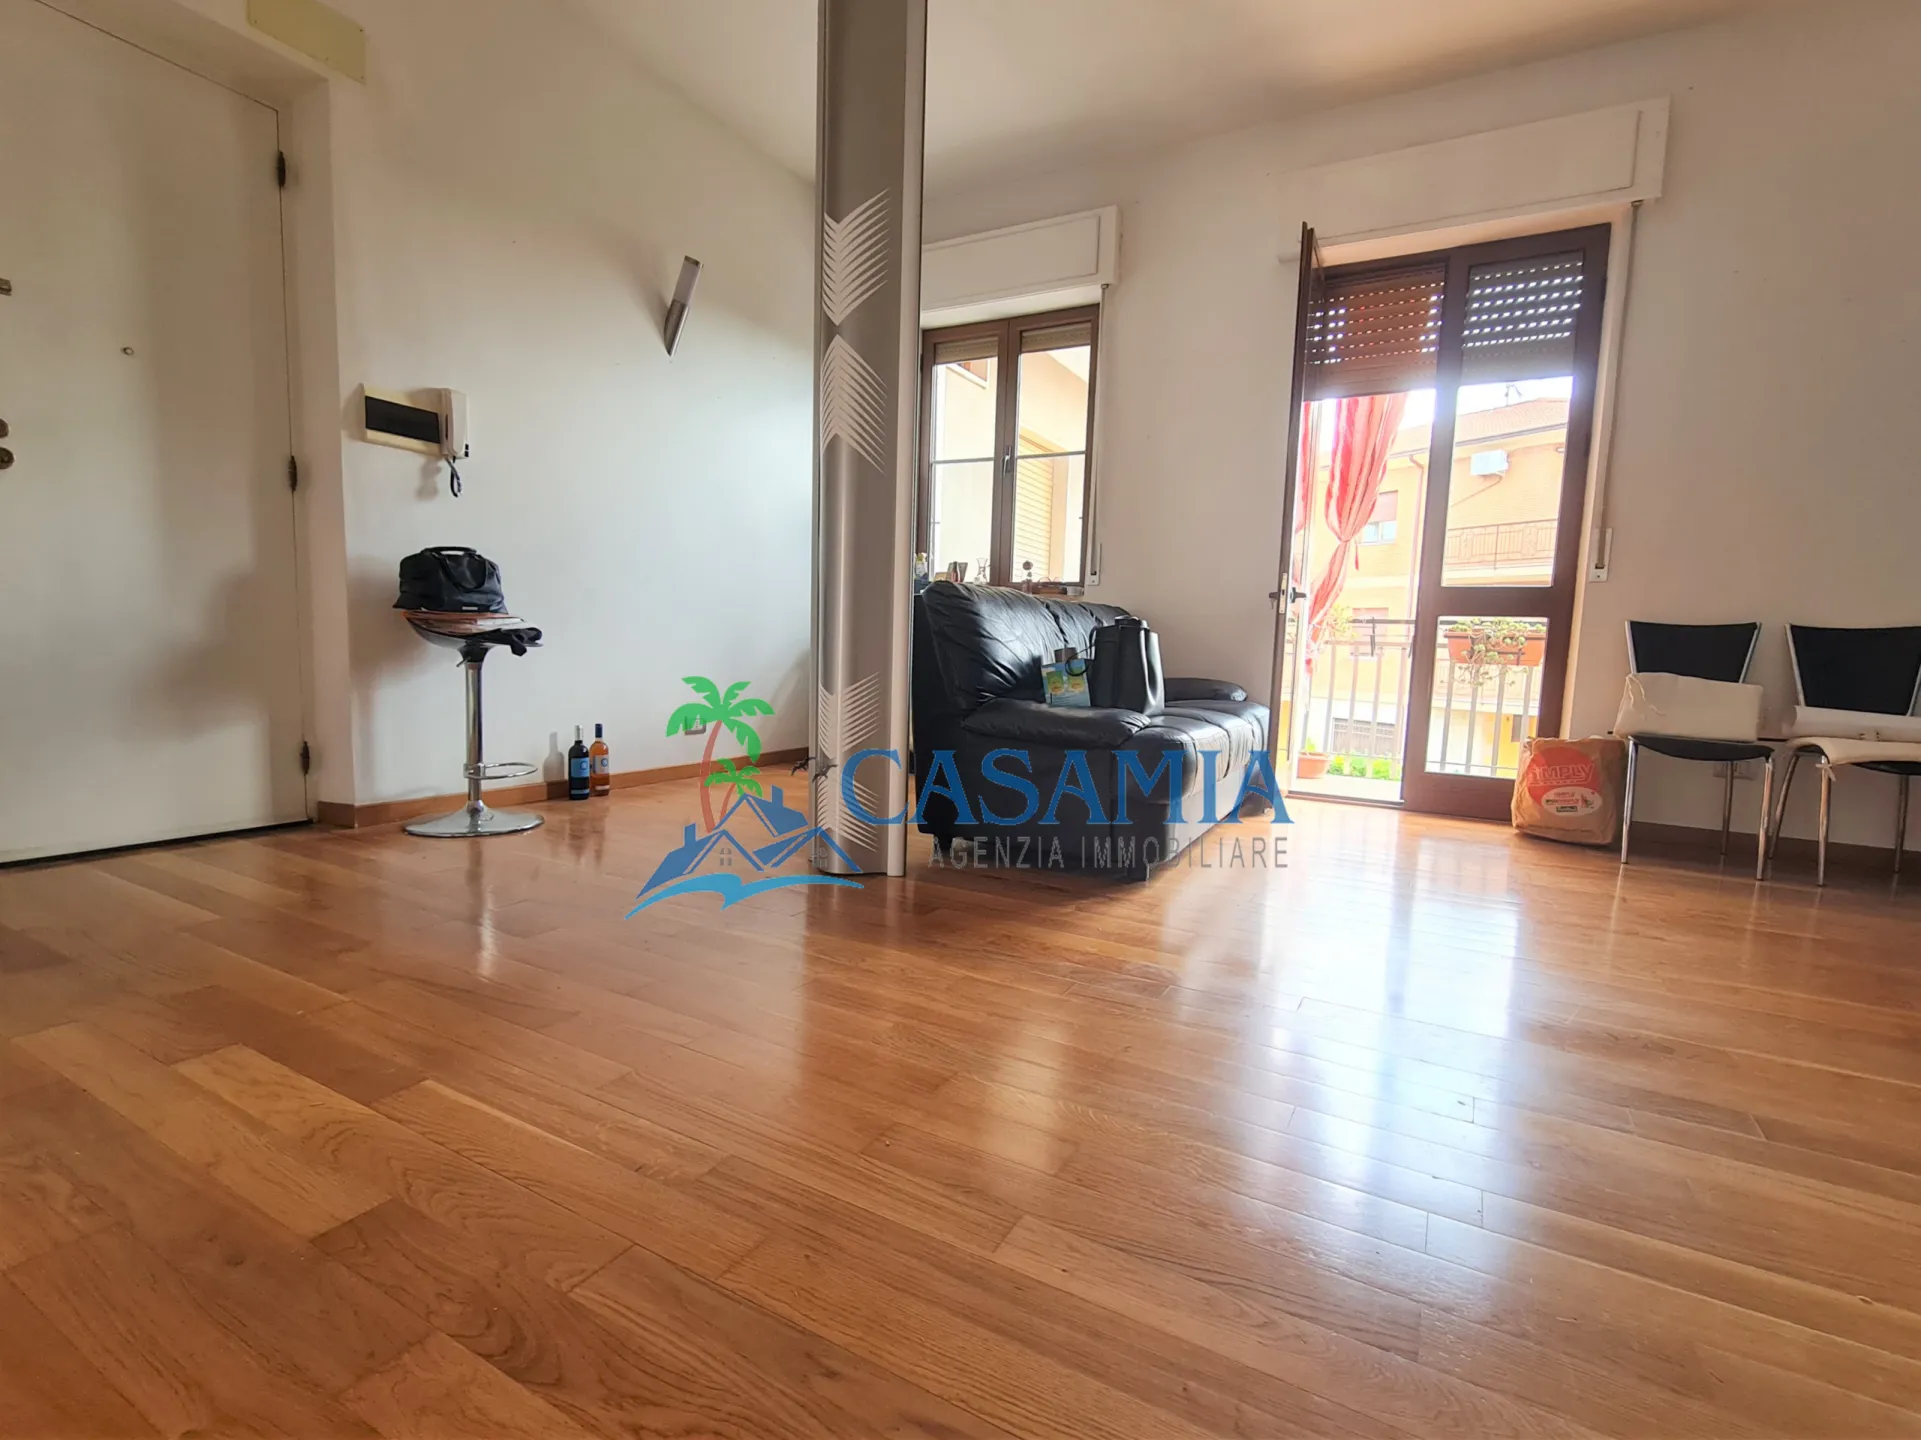 Immagine per Appartamento in vendita a Folignano via Cenciarini